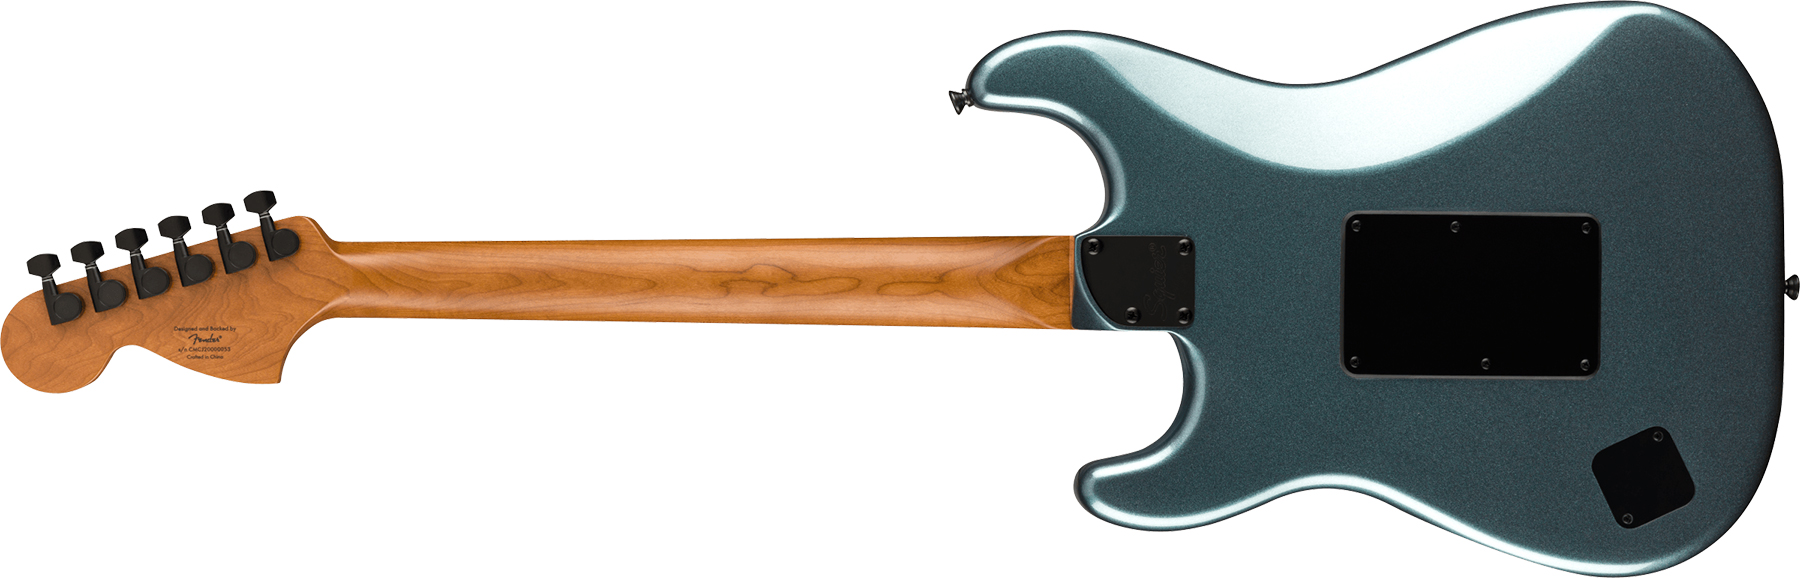 Squier Strat Contemporary Hh Fr Mn - Gunmetal Metallic - Guitarra eléctrica con forma de str. - Variation 1